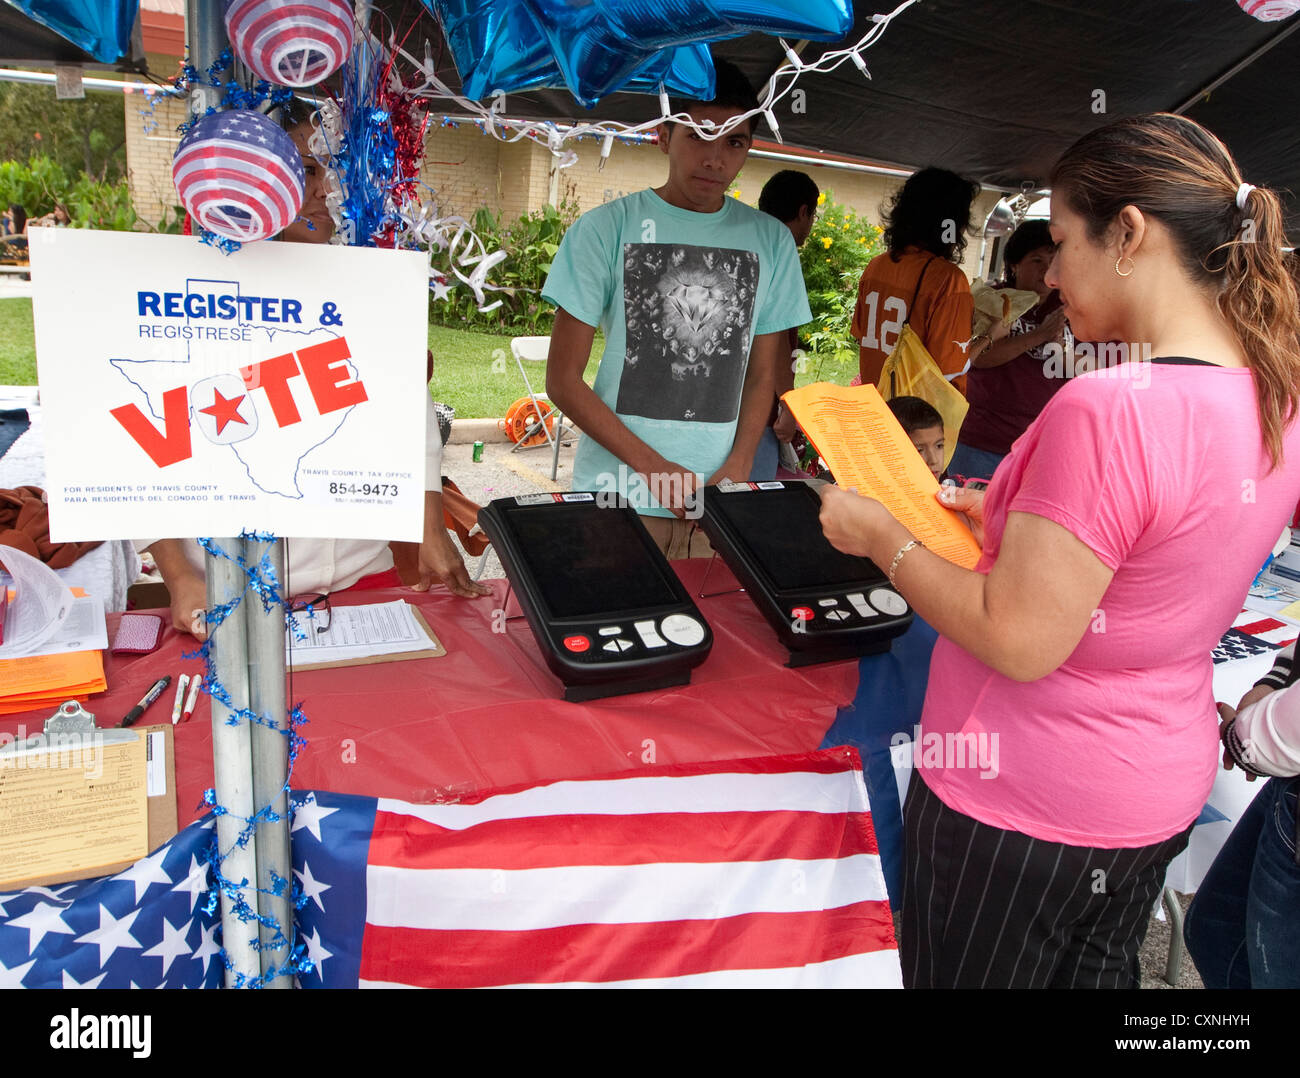 La registrazione degli elettori stand a una chiesa outdoor festival di Austin, Texas include il voto elettronico dimostrazione della macchina Foto Stock